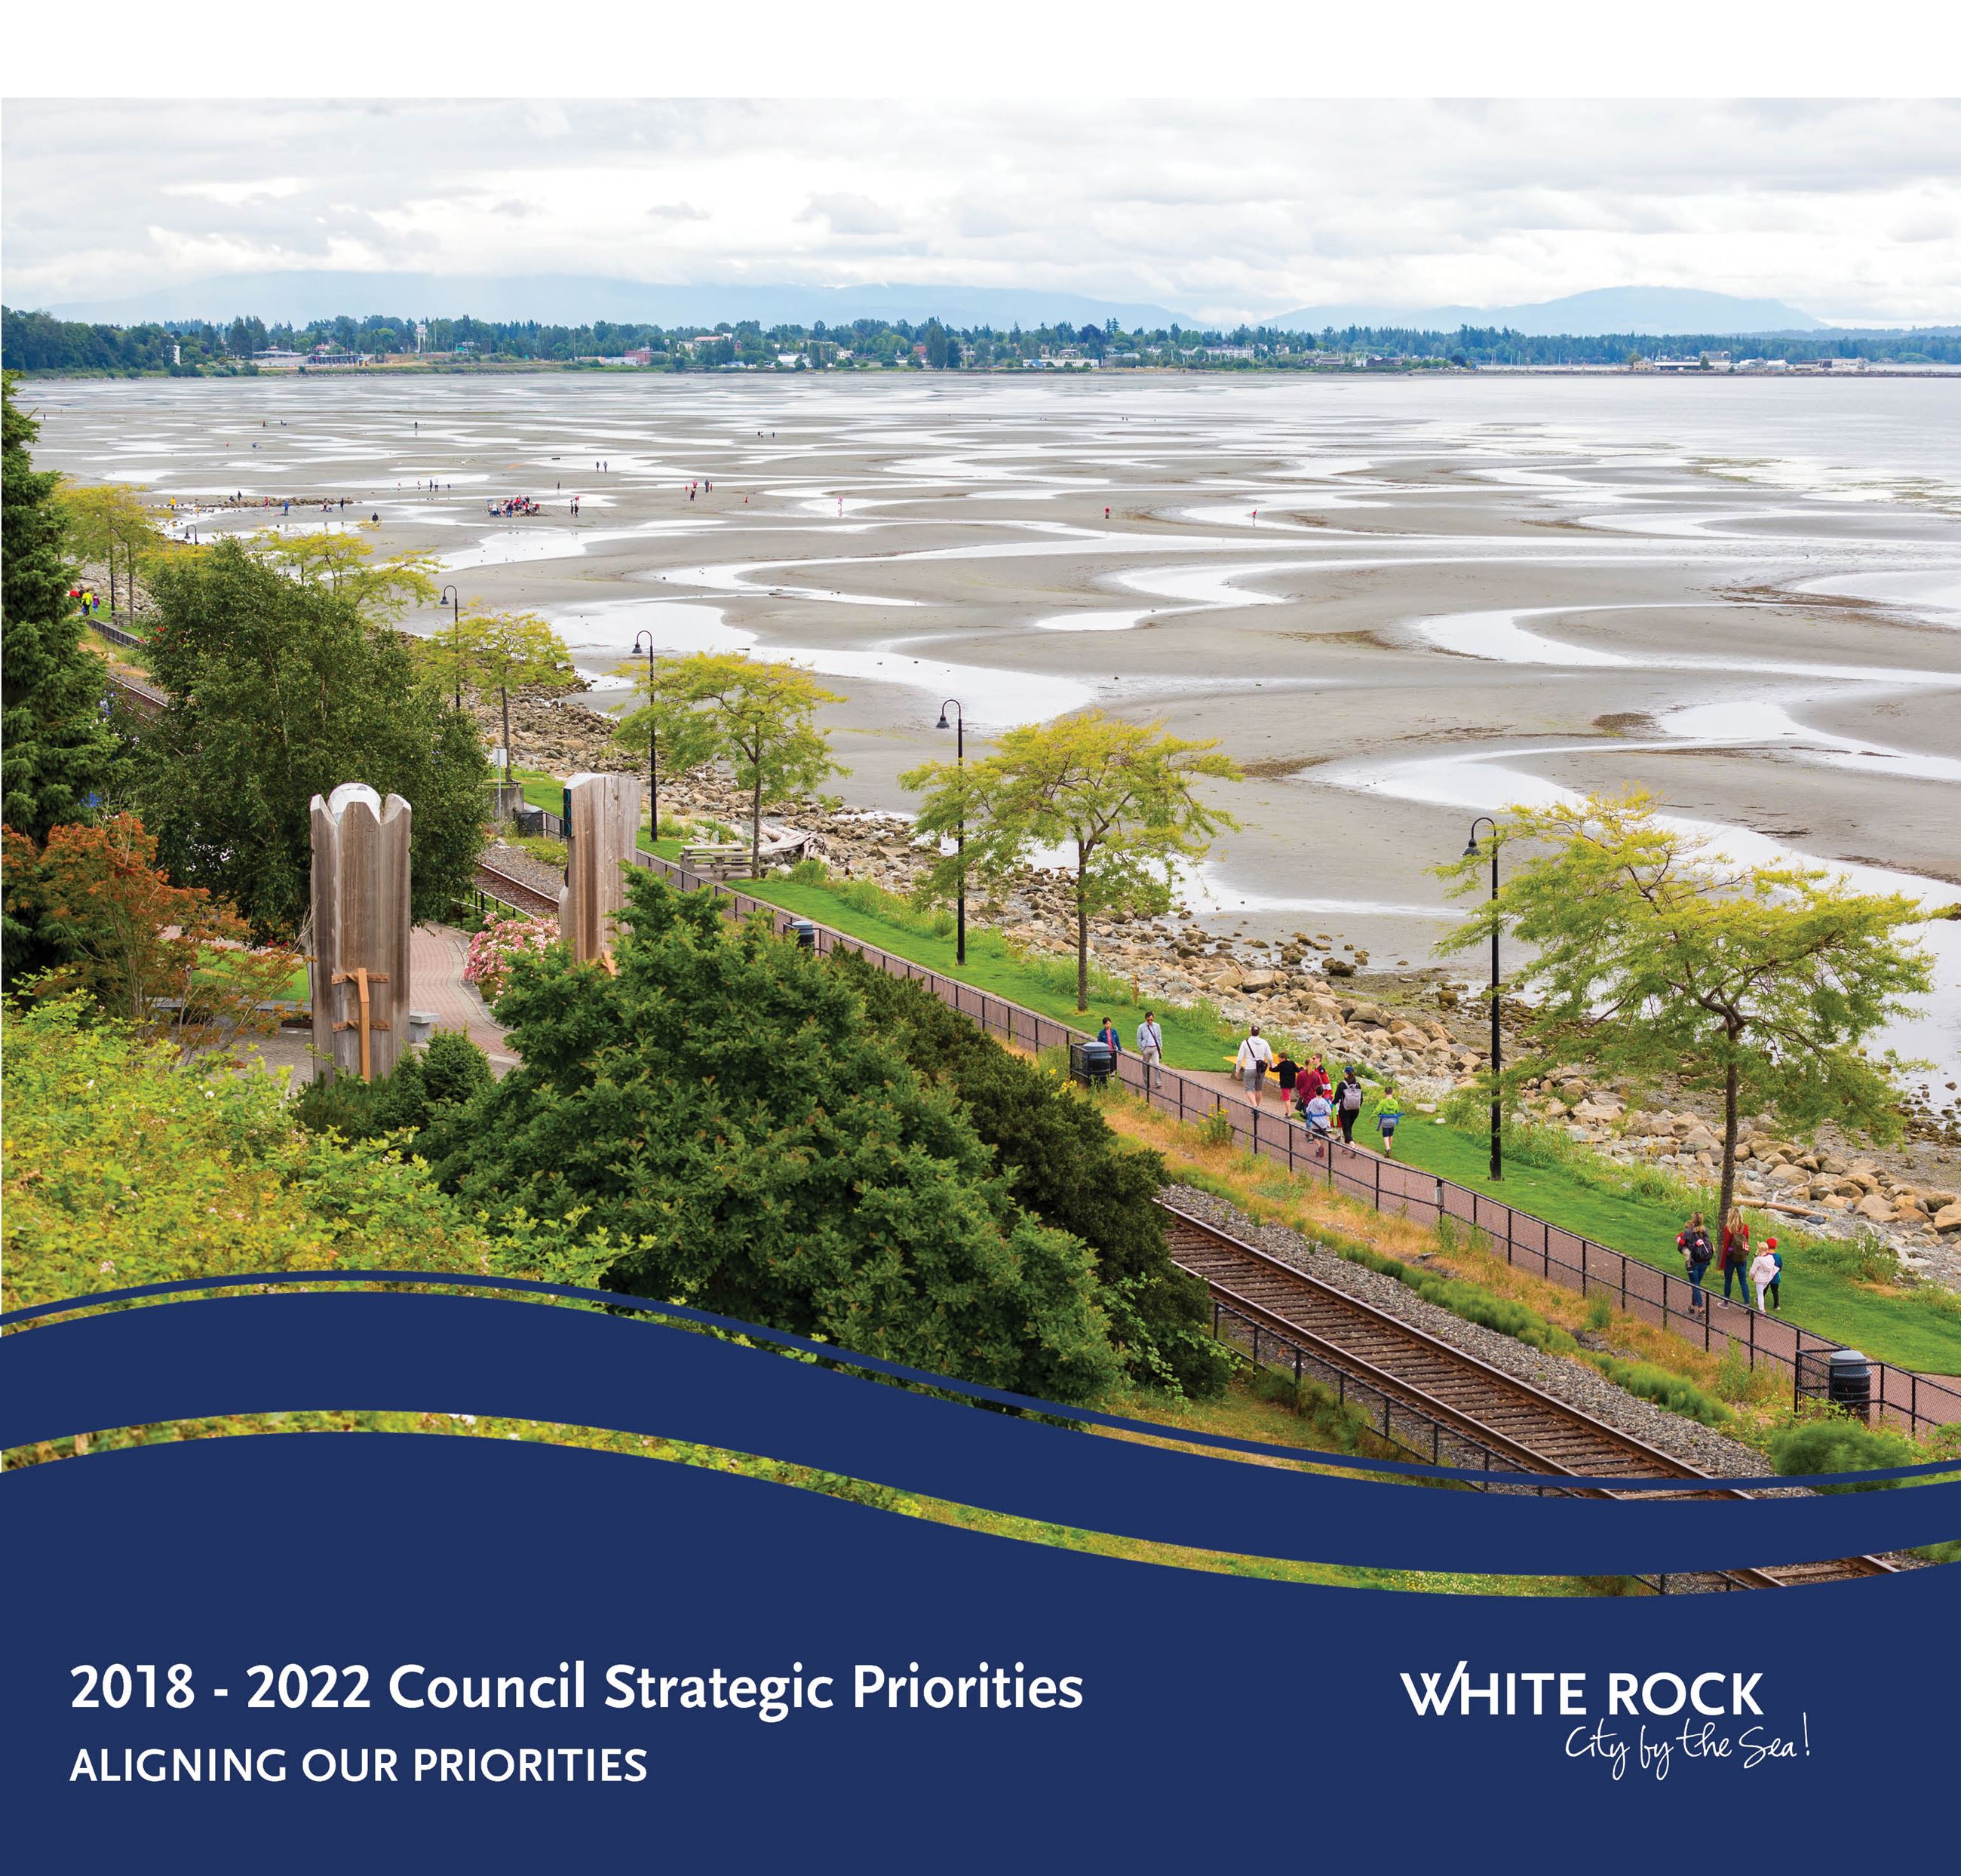 Council Strategic Priorities 2018-2022